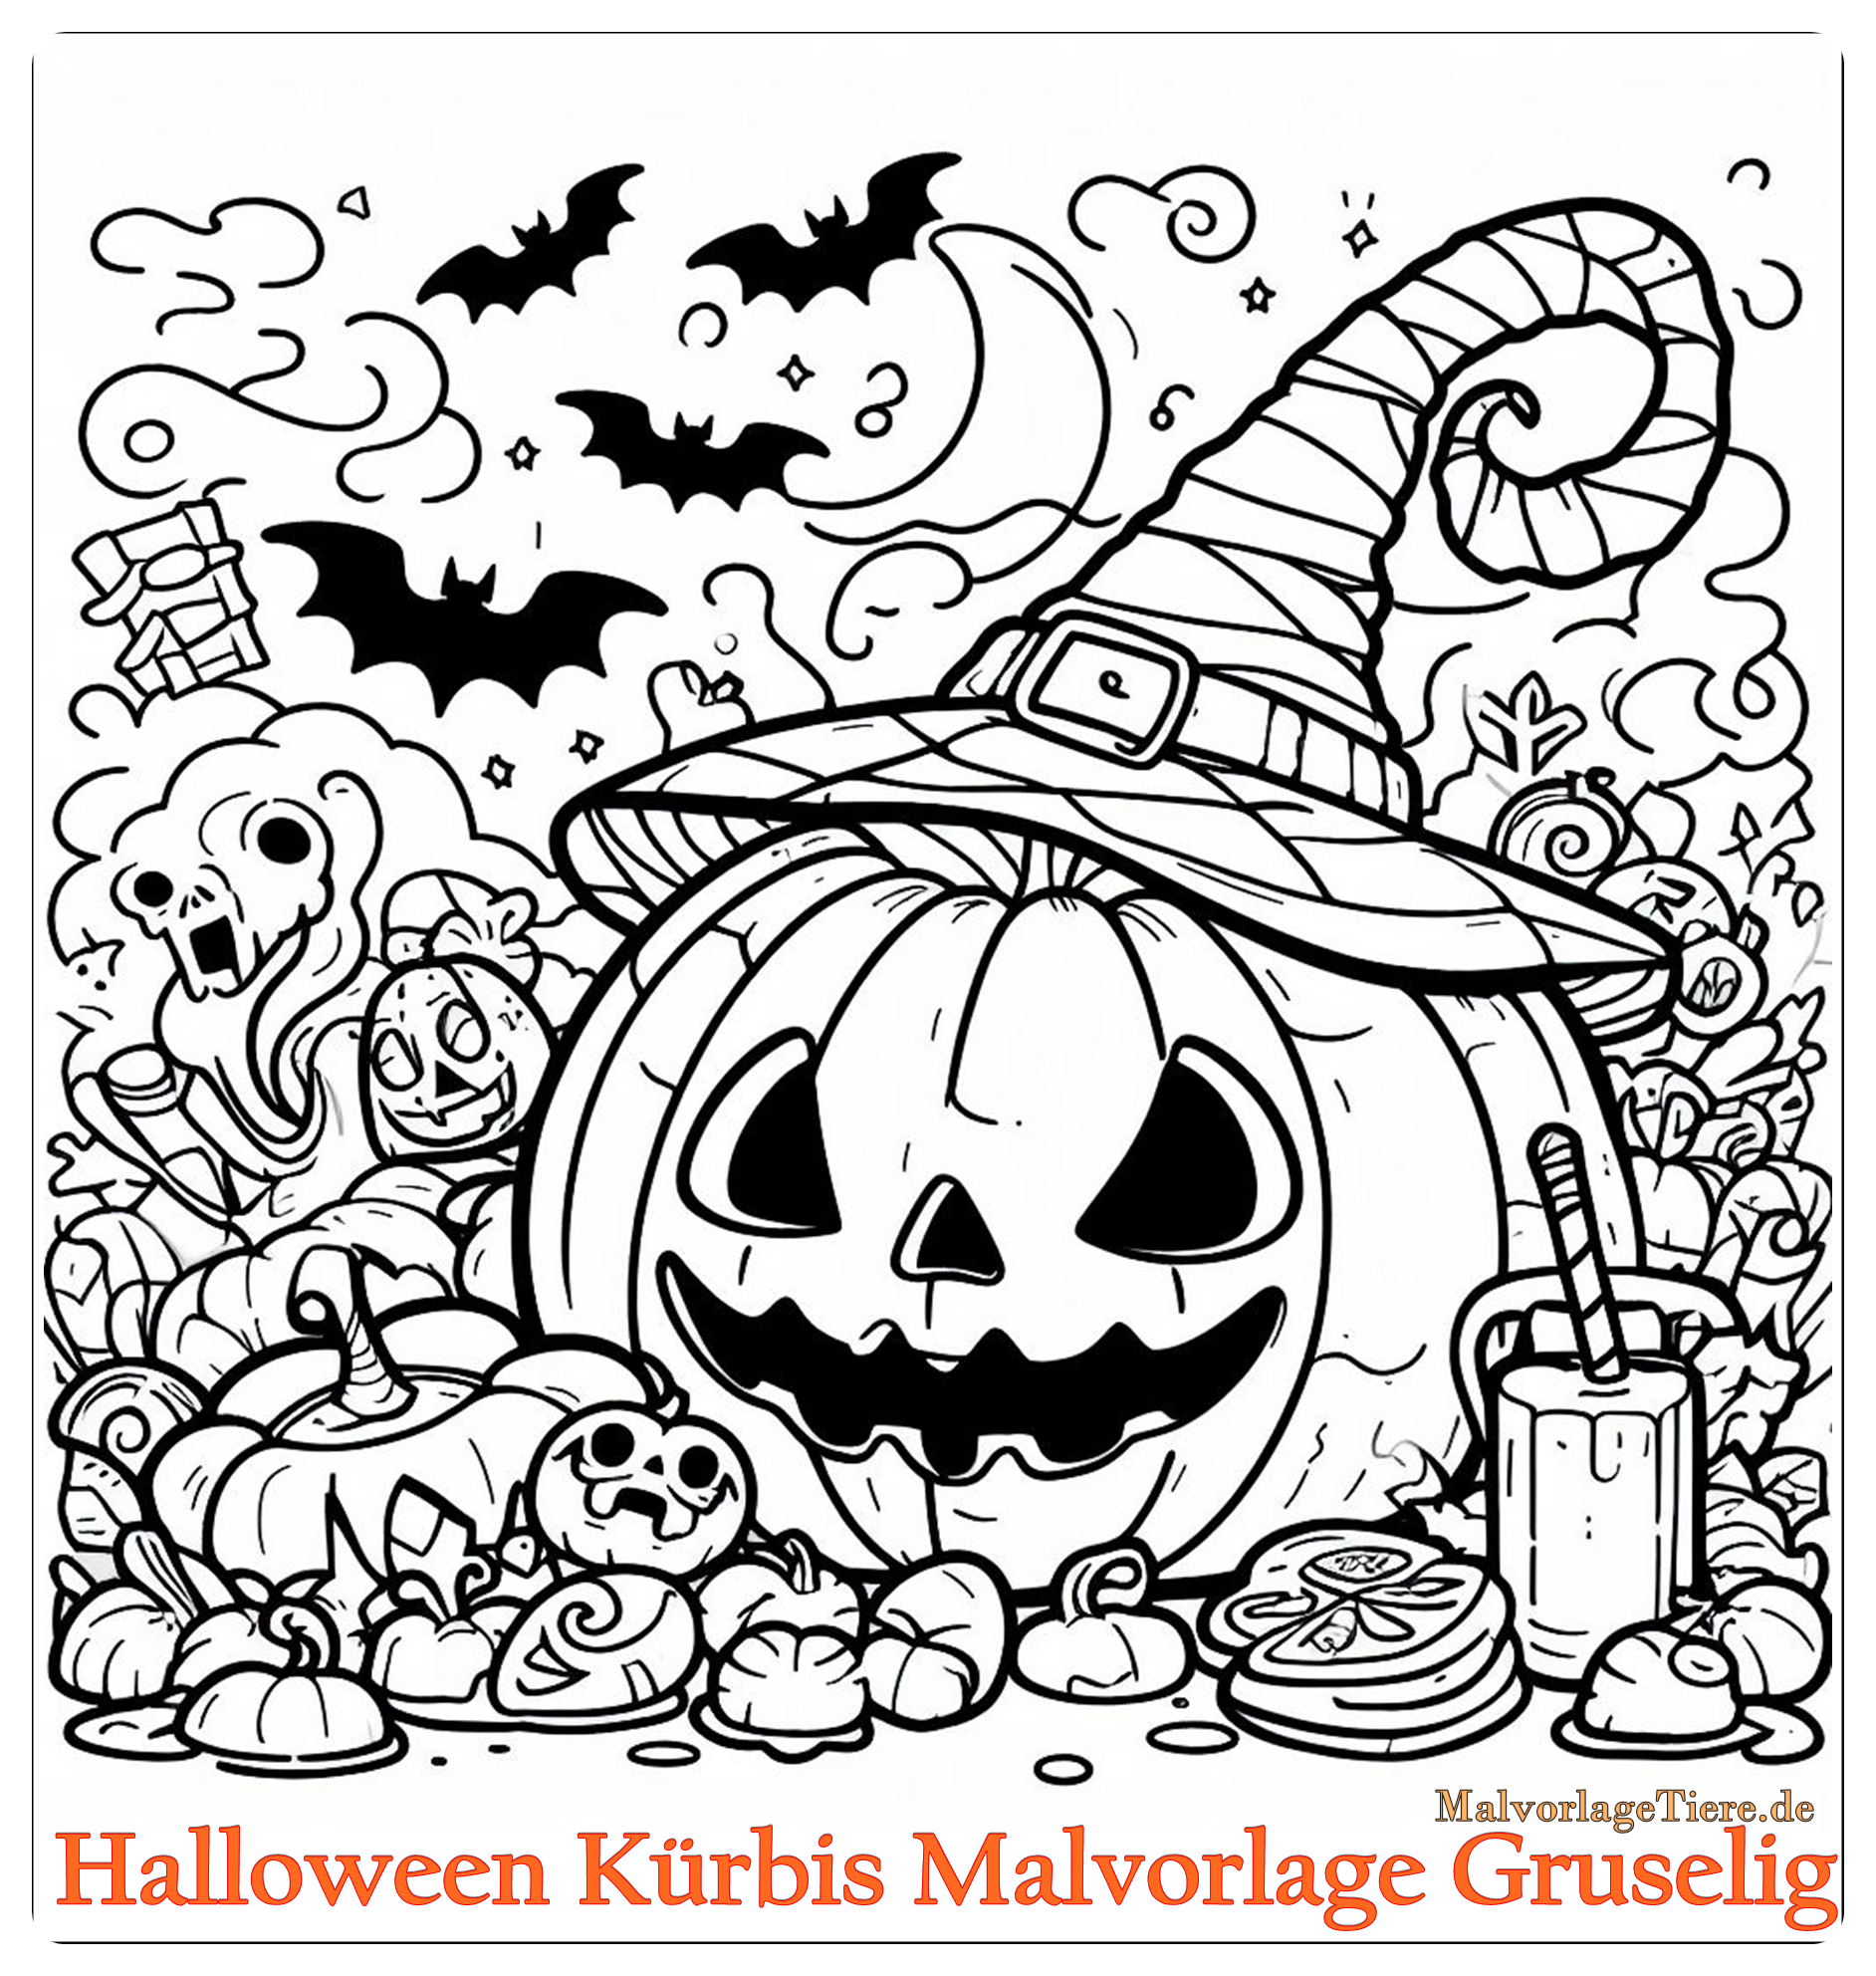 Halloween Kürbis Malvorlage Gruselig 02 by malvorlagetiere.de